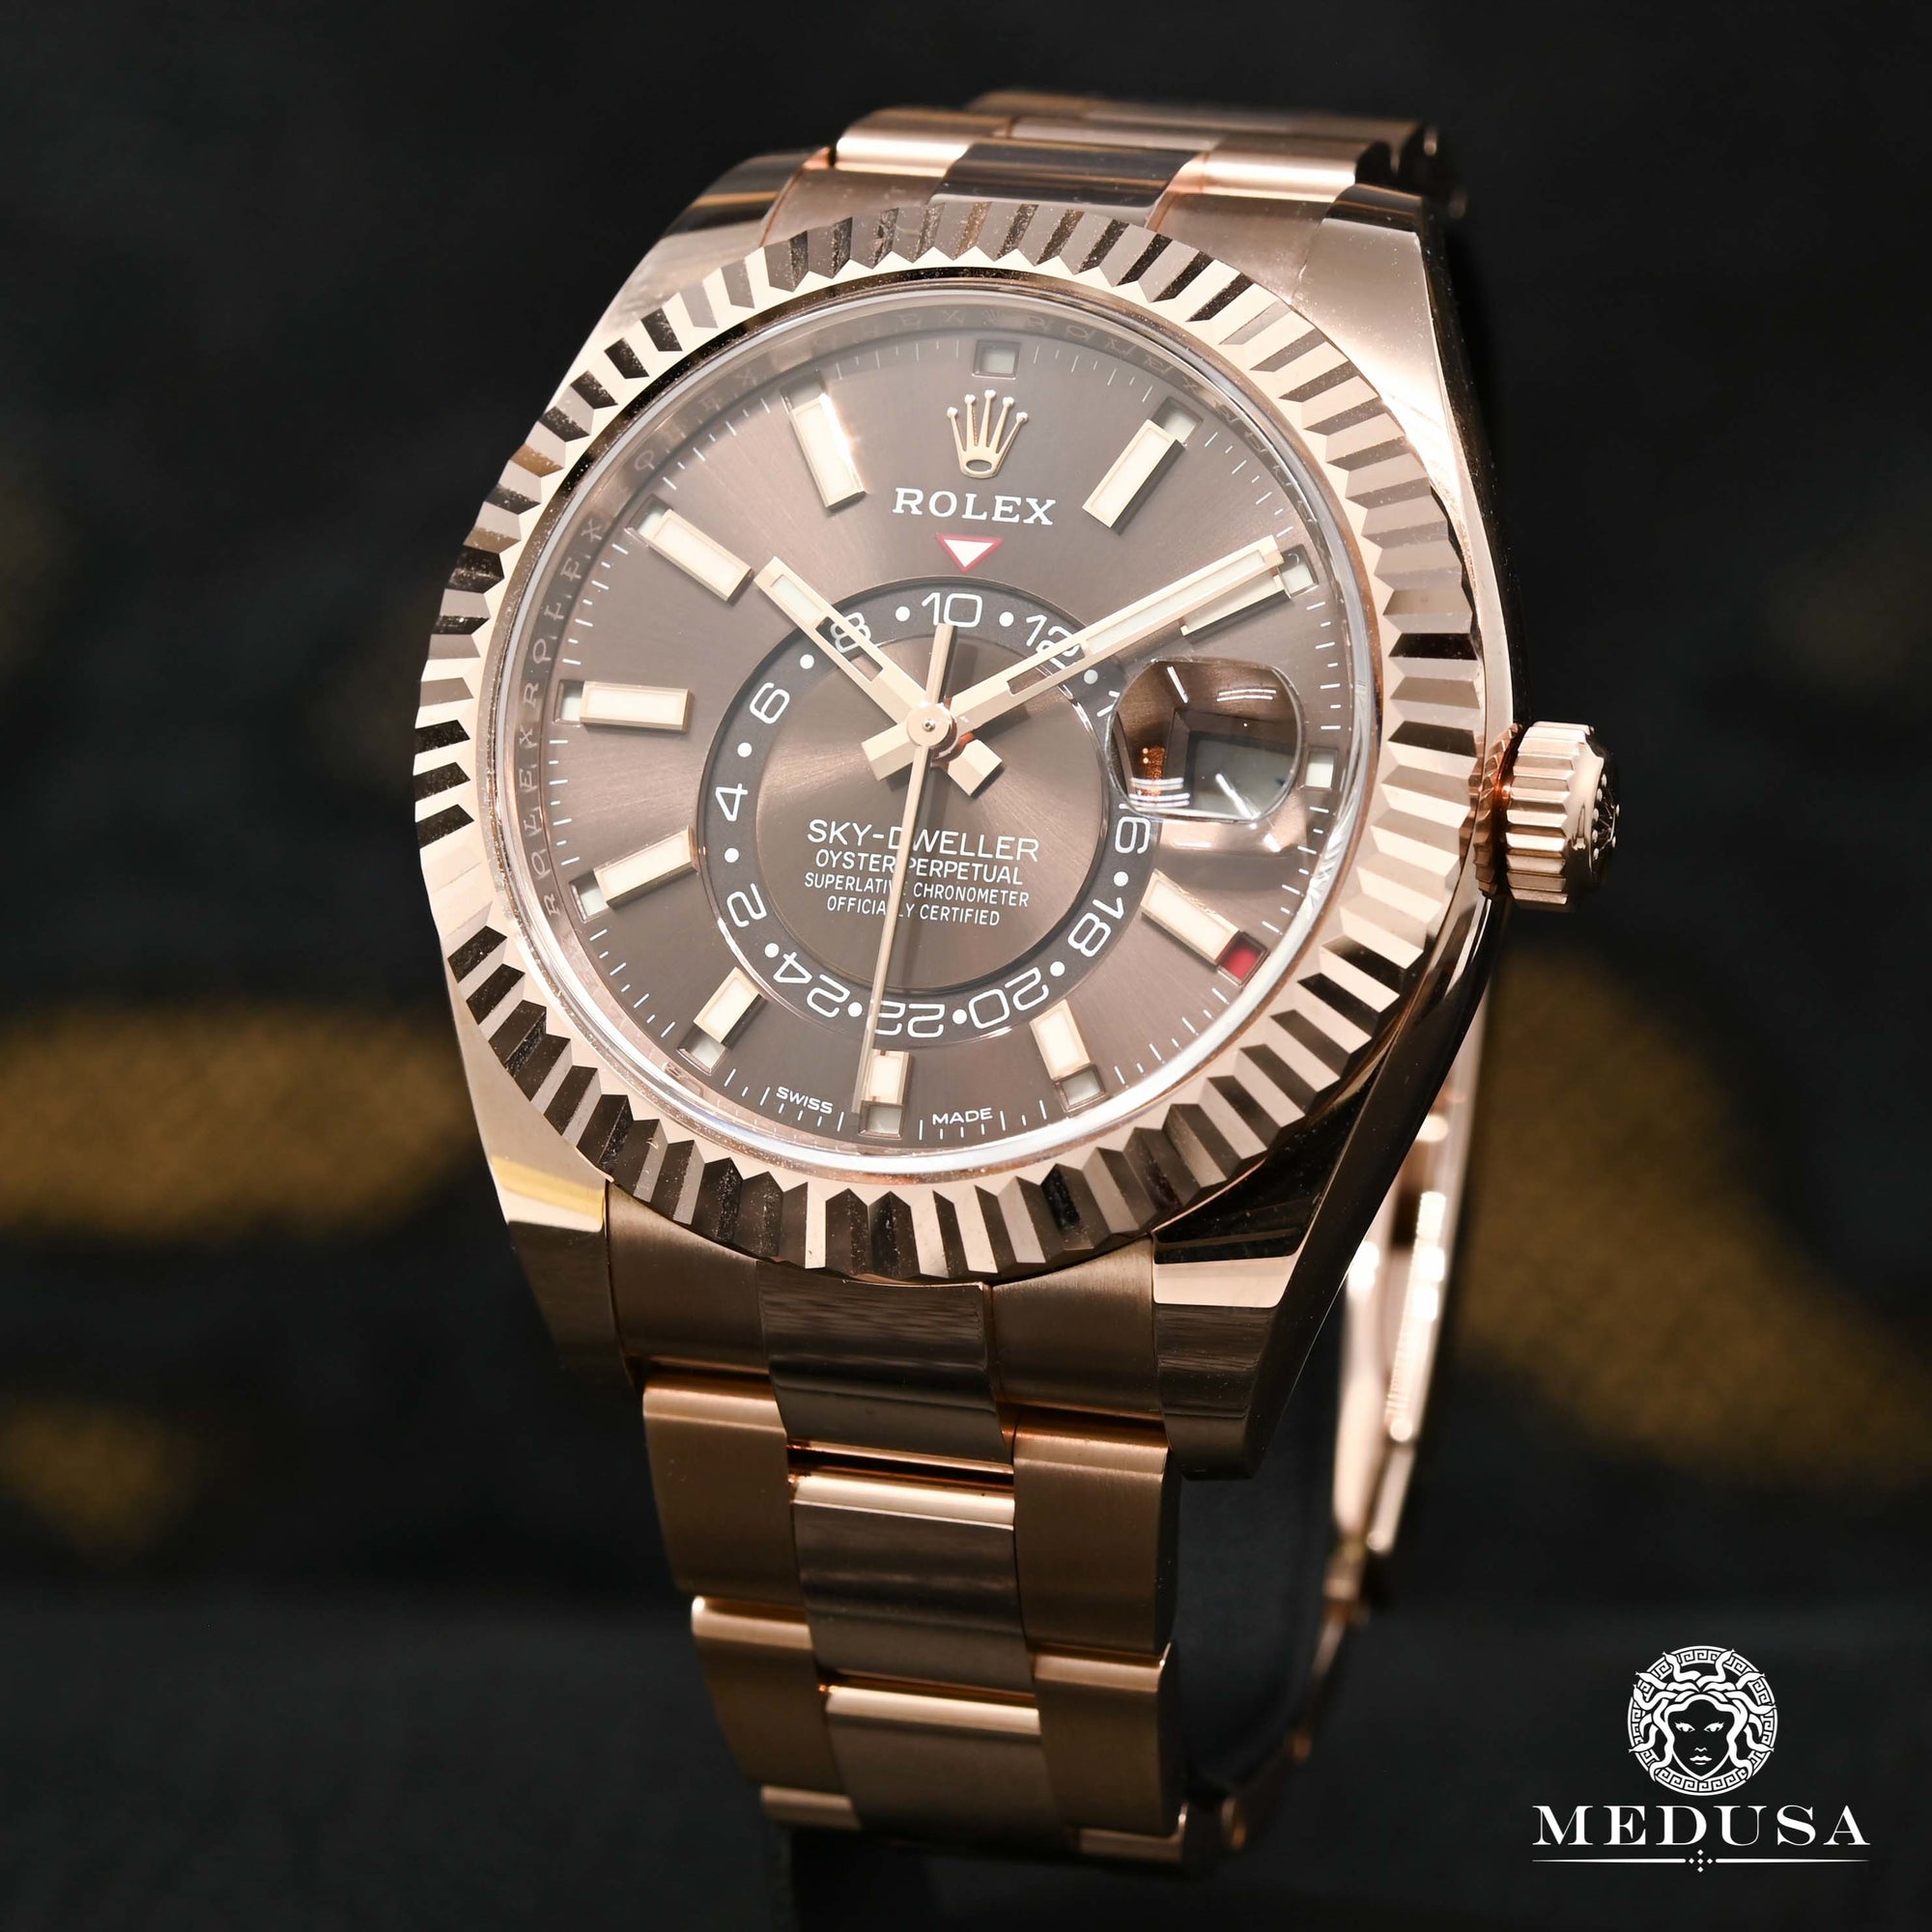 Rolex watch | Rolex Sky-Dweller Men's Watch 42mm - Everose Chocolate Rose Gold